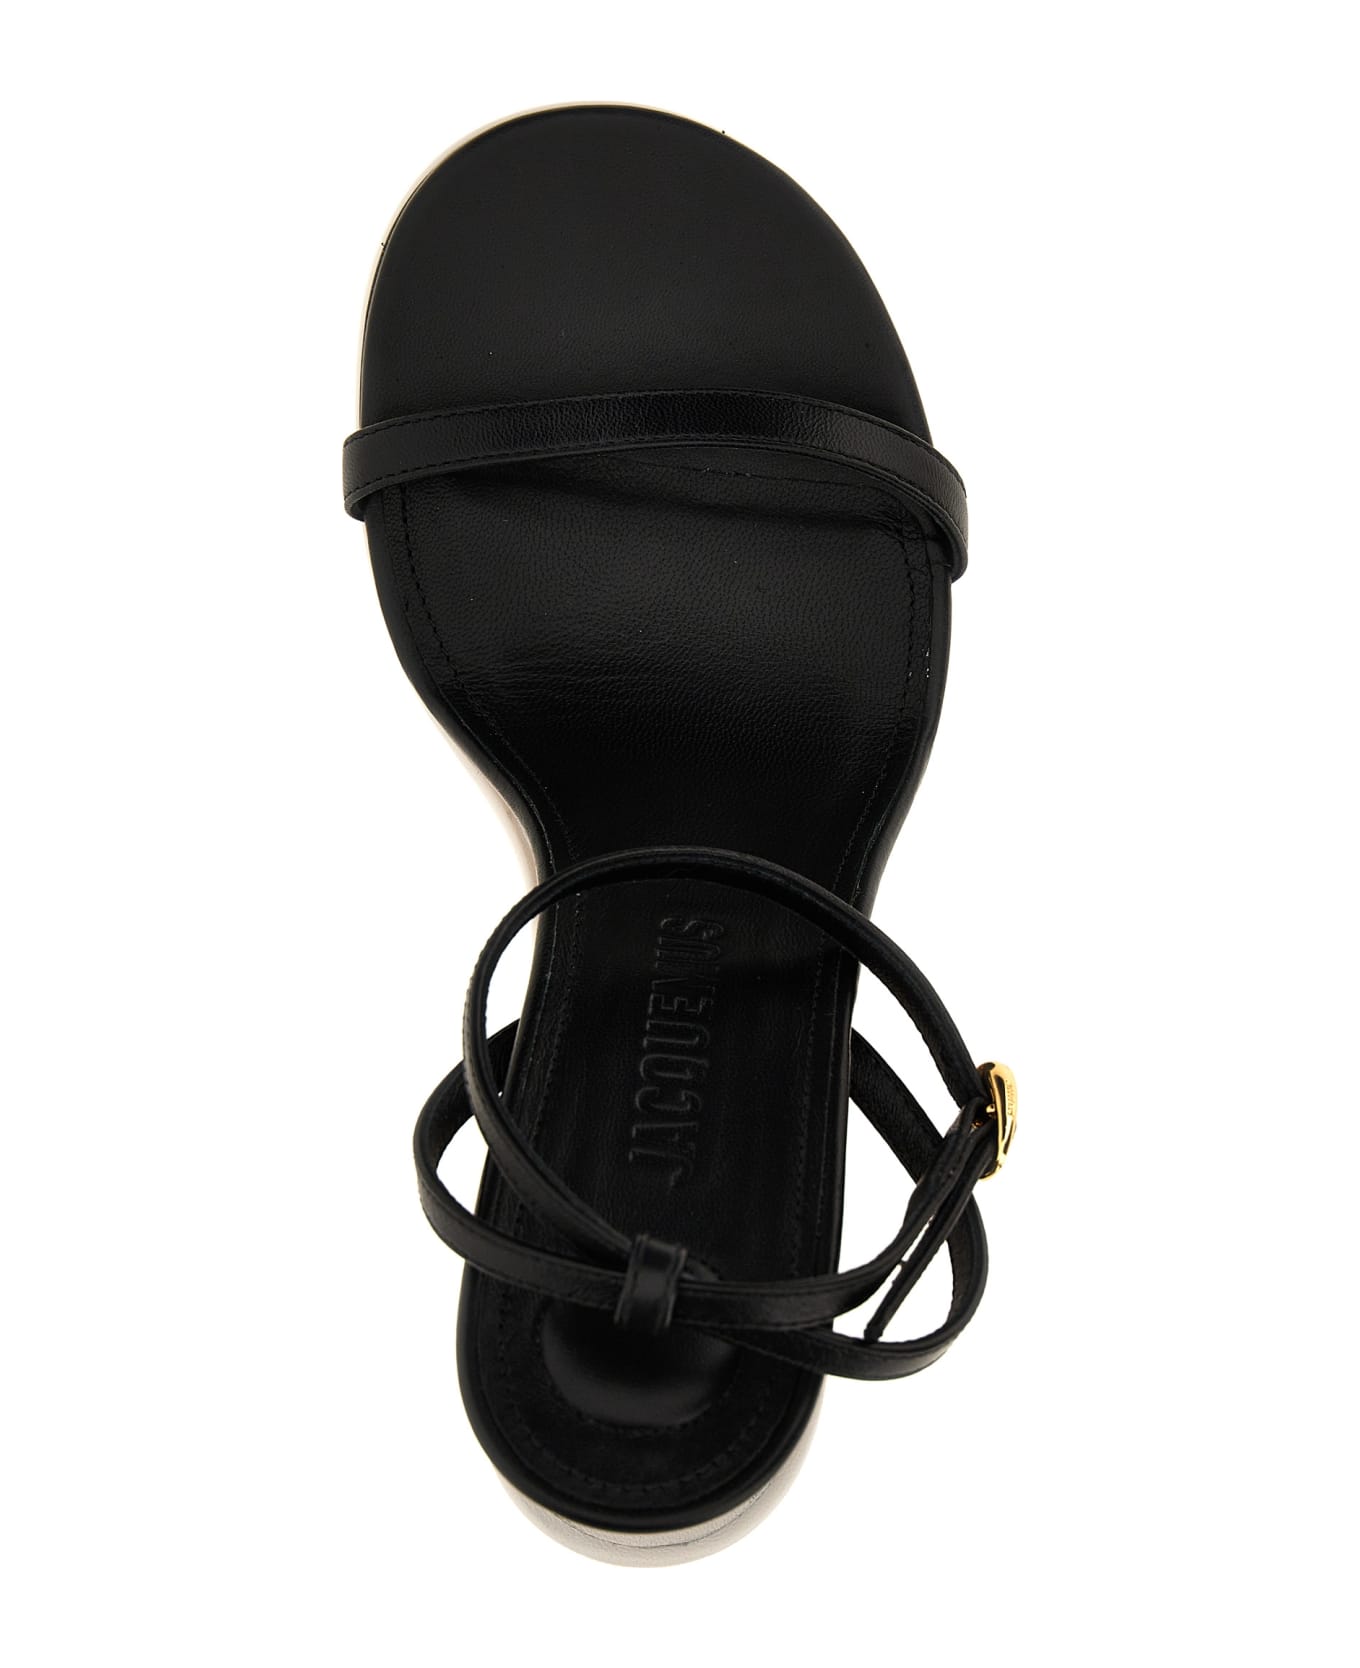 Jacquemus Les Doubles Sandales Sandals - White/Black